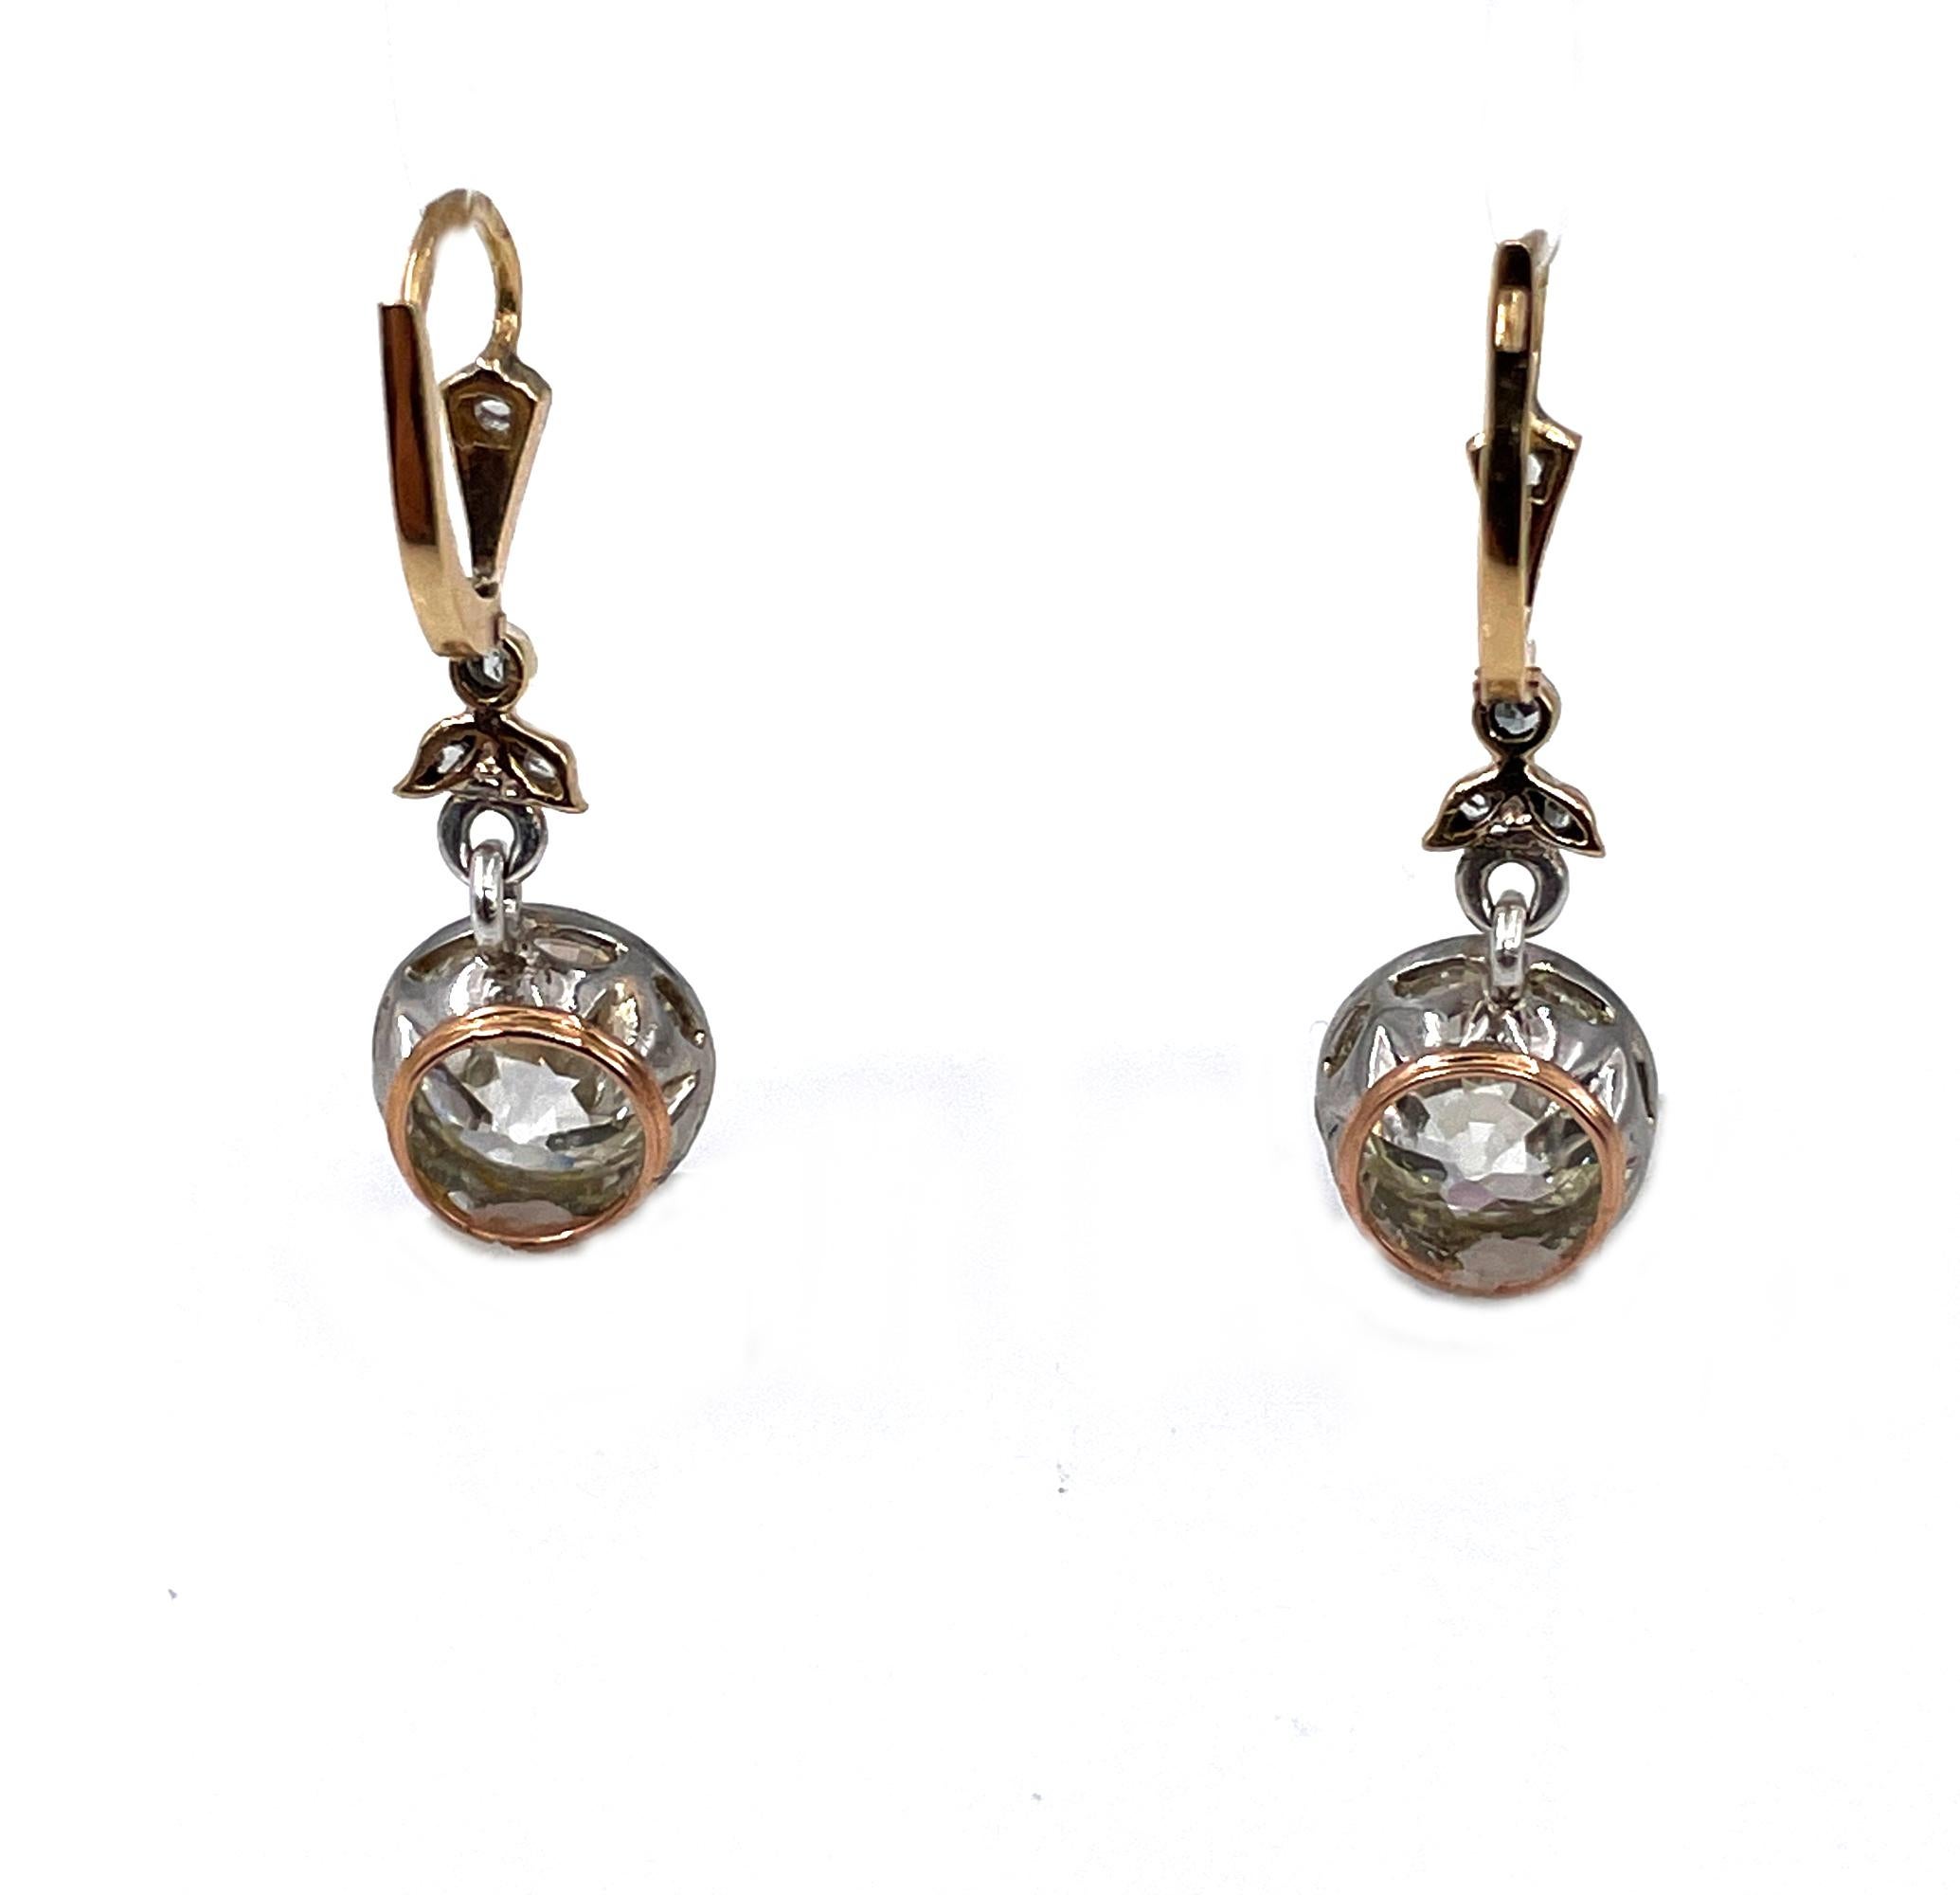 old european cut diamond earrings